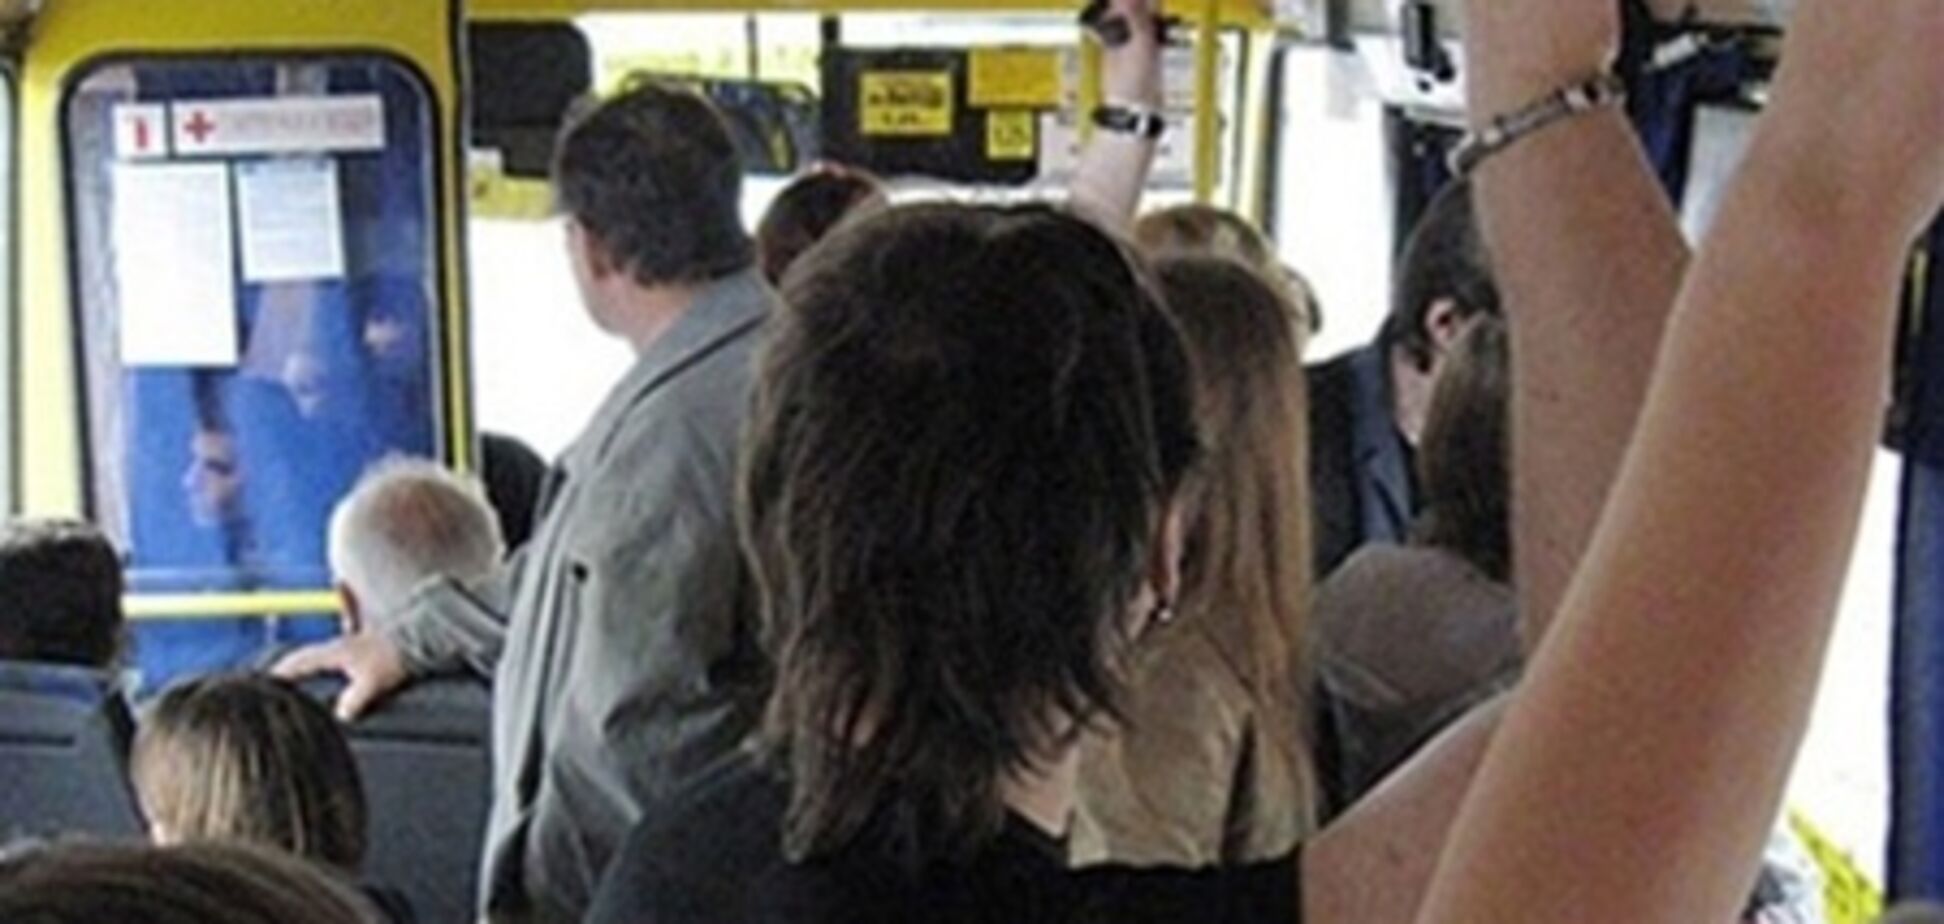 Общественный транспорт - наиболее 'больной' вопрос для жителей Киева